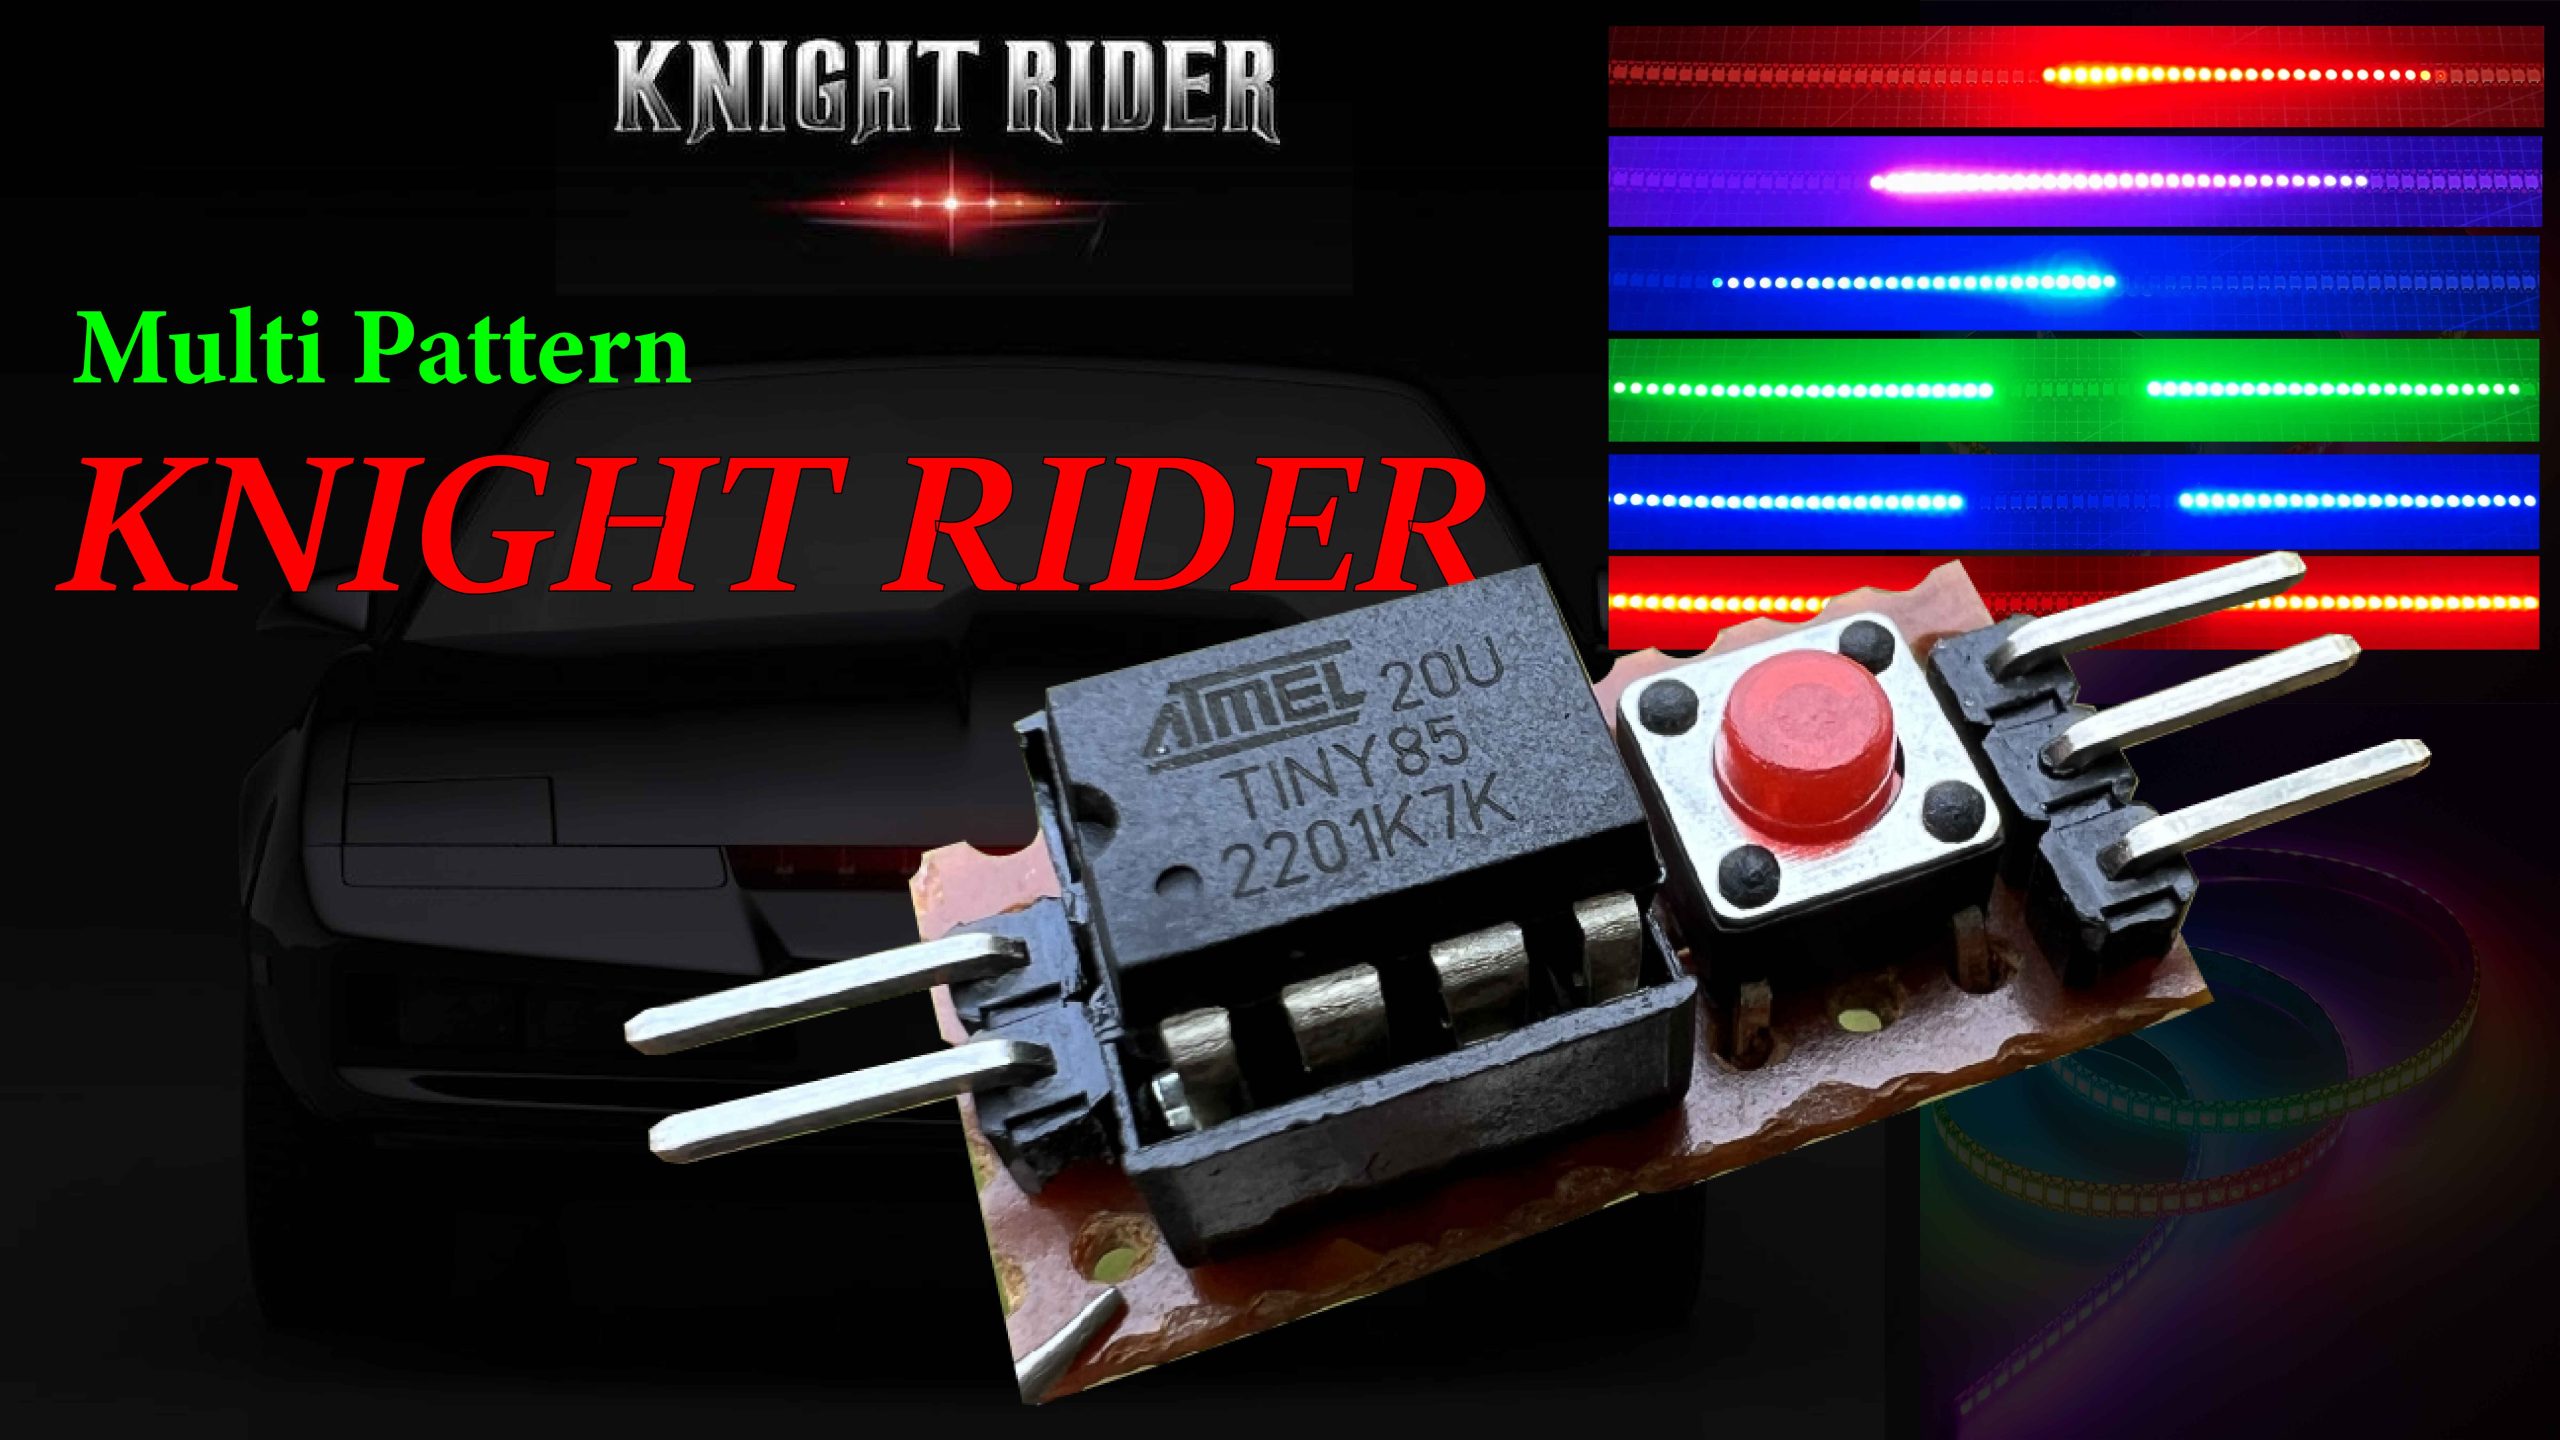 Multi-Pattern Knight Rider